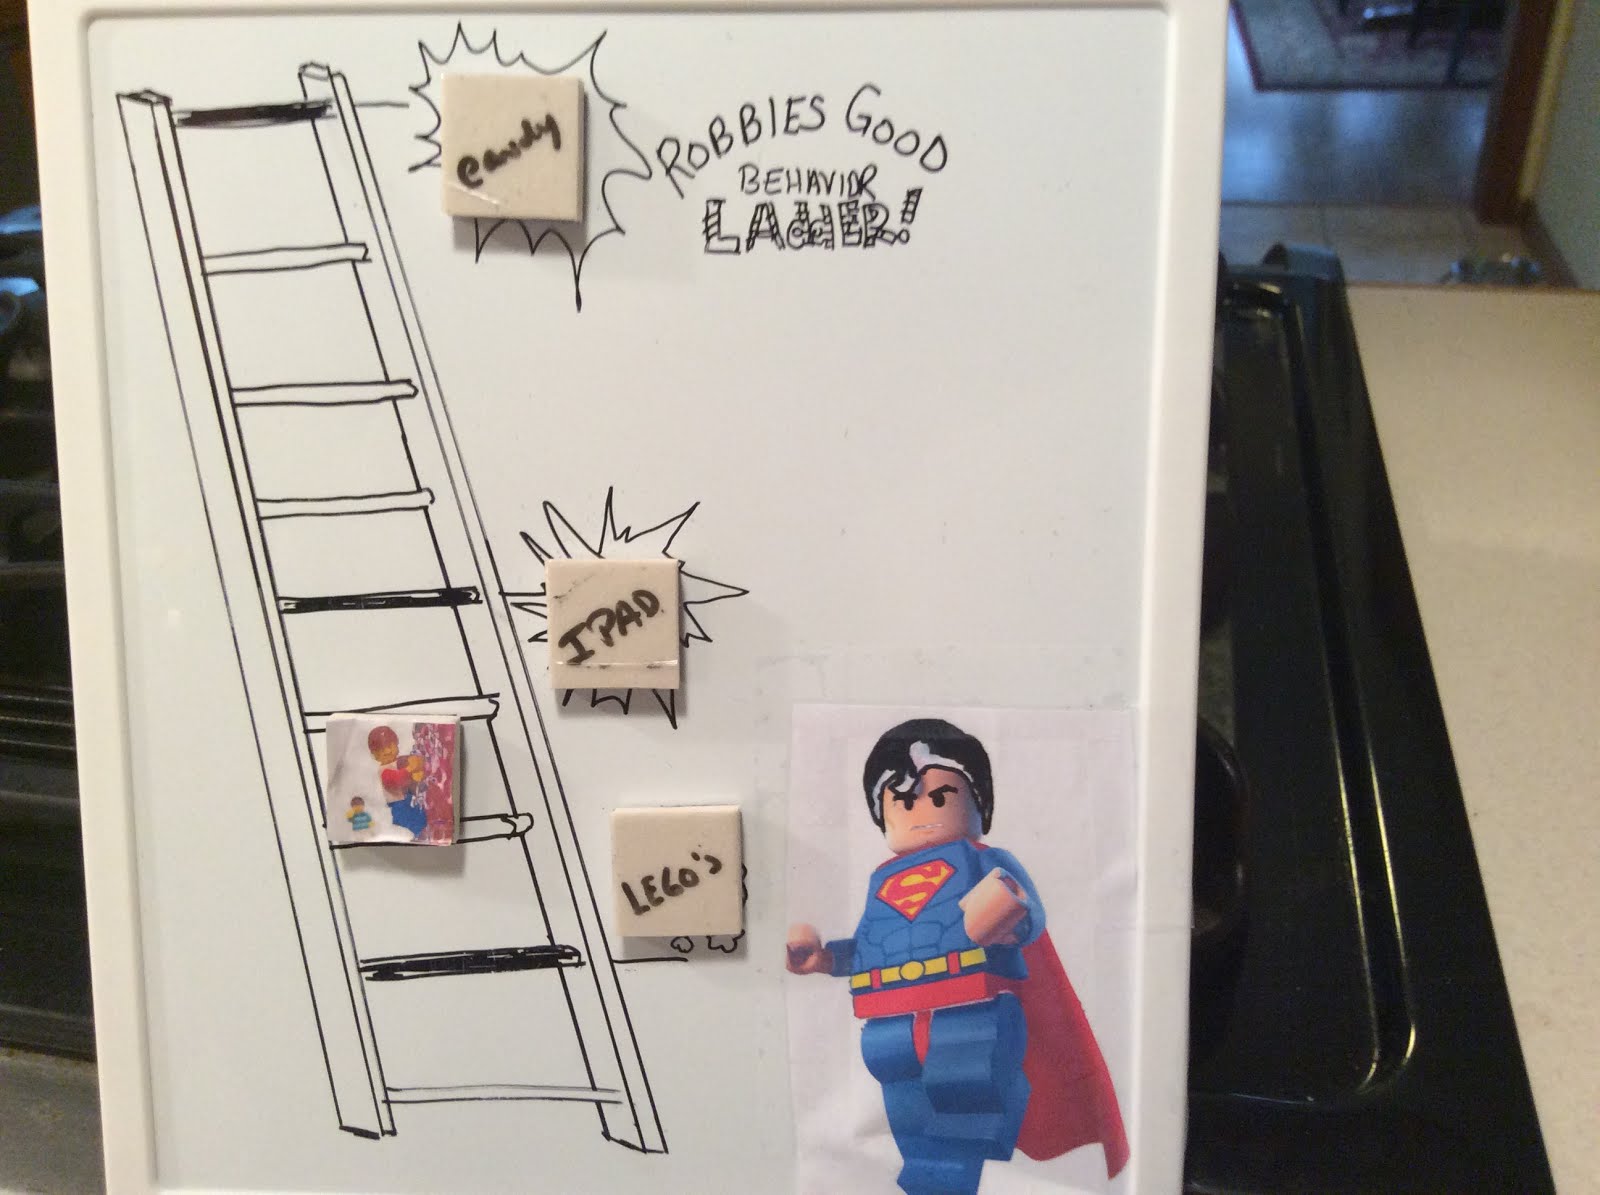 Robbie's behavior ladder!!